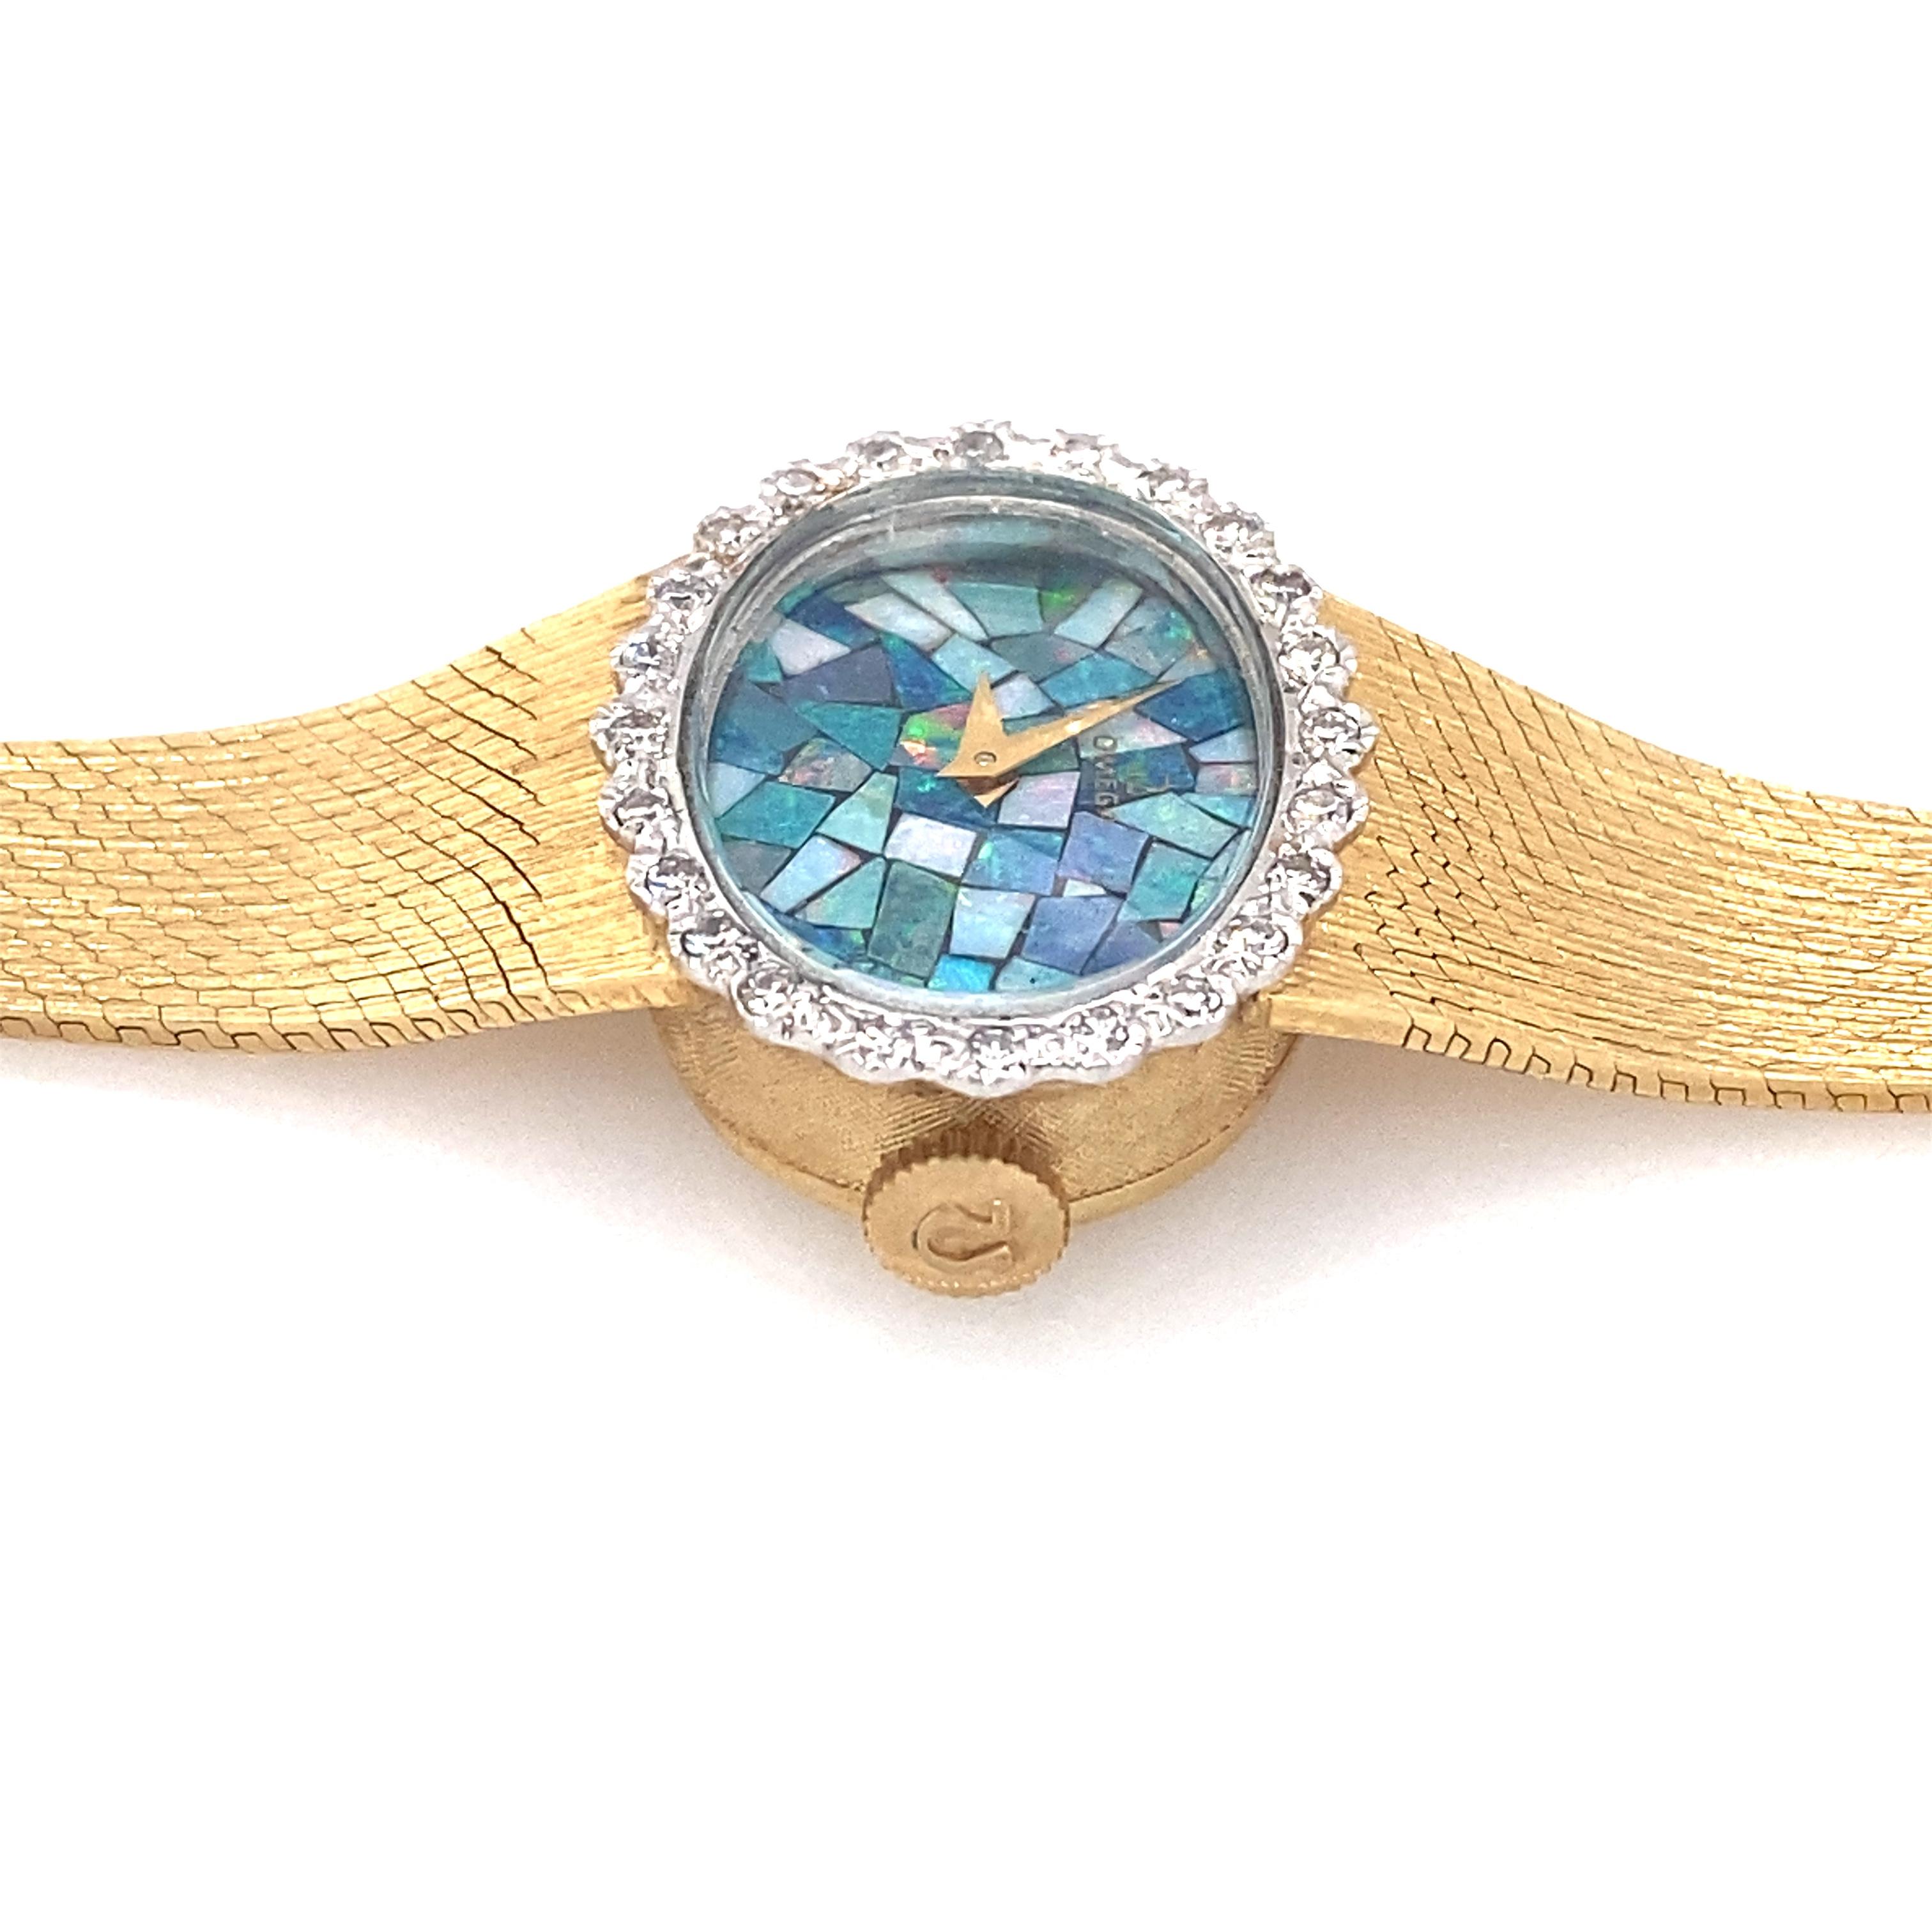 14 karat gold watches for ladies